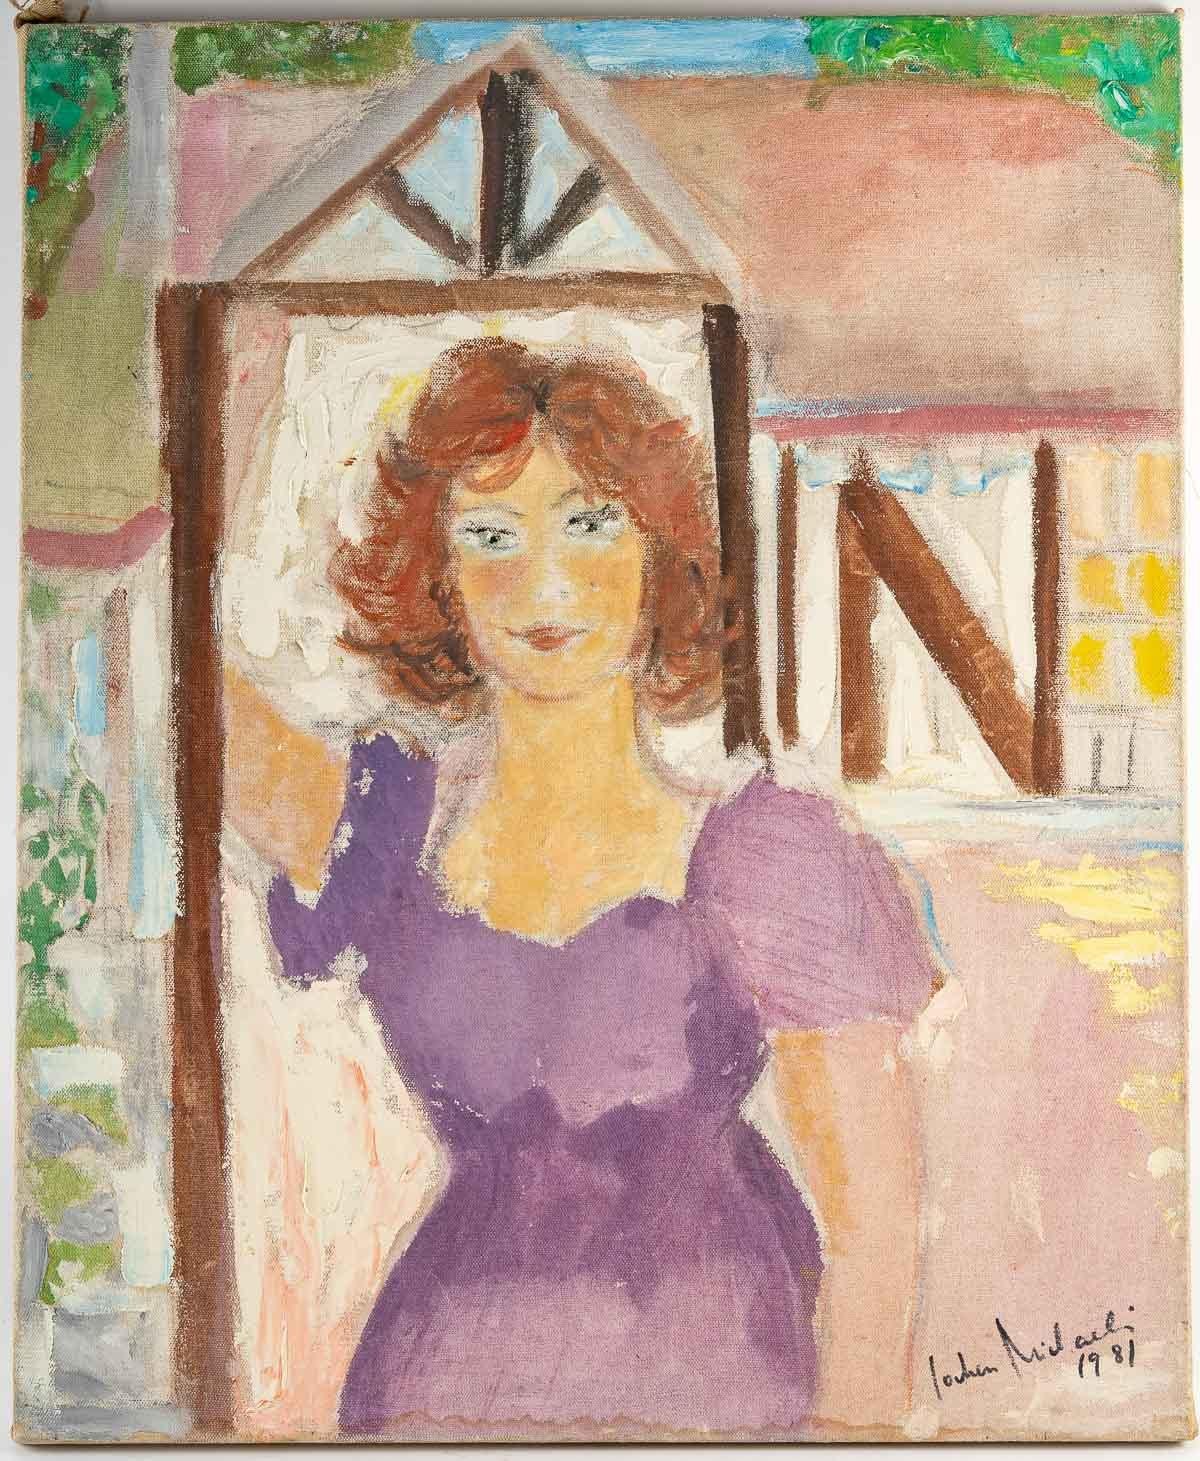 Gemälde einer Frau, 20. Jahrhundert
Gemälde, Öl auf Leinwand, signiert und datiert 1981, das eine junge Frau in Frühlingskleidung zeigt.
Maße: H: 73 cm, B: 60 cm, T: 2 cm.